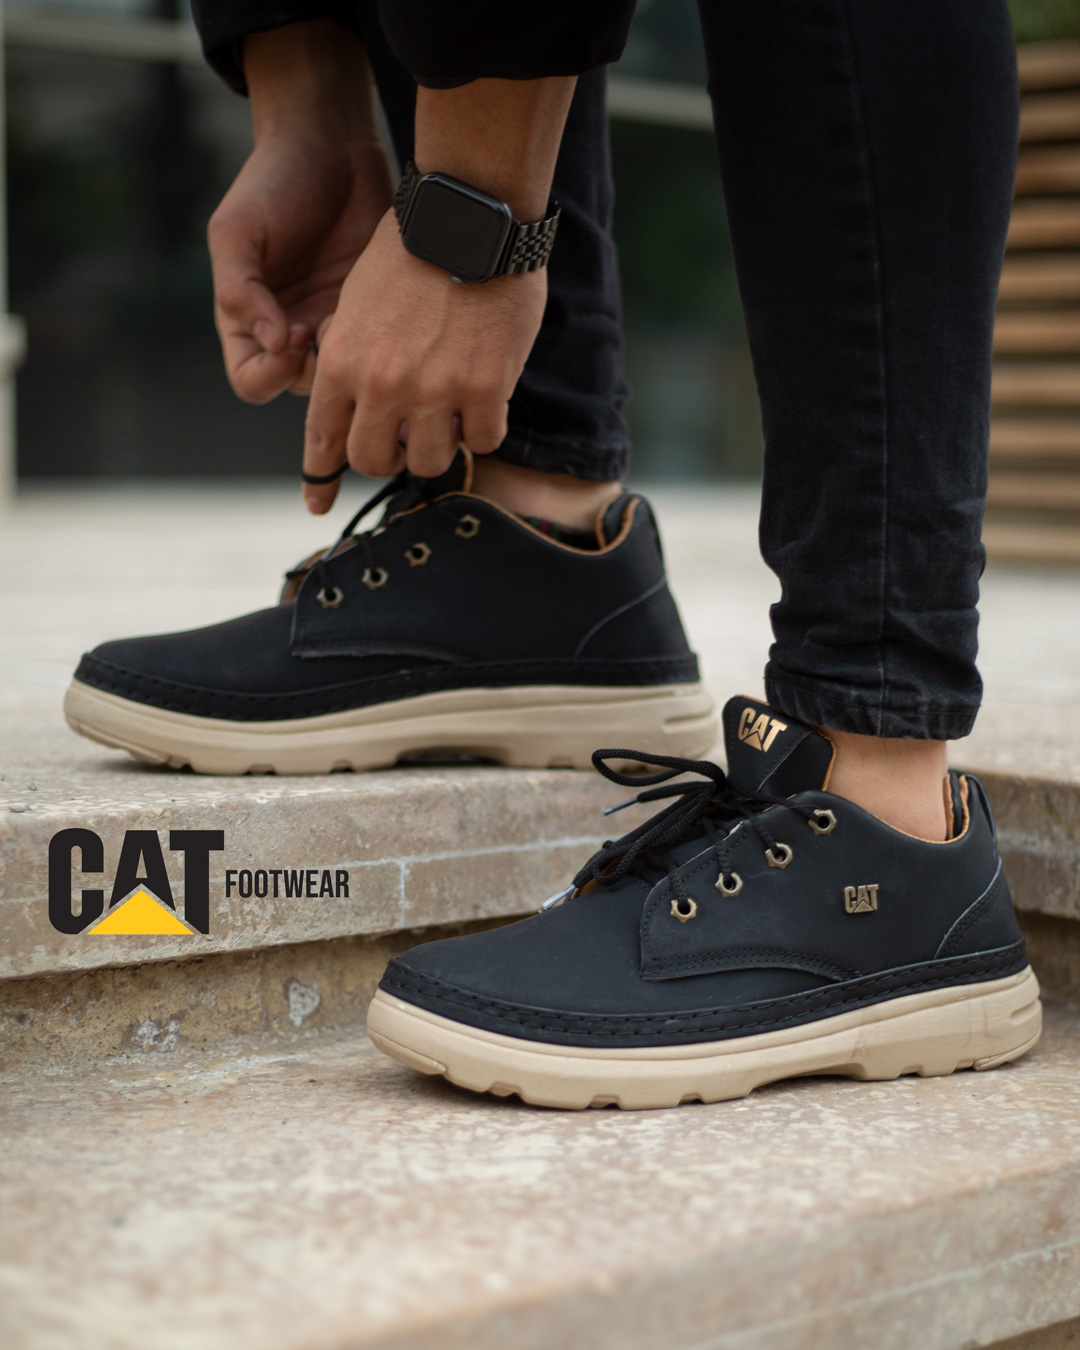 کفش مردانه Cat مدل Santos (مشکی)